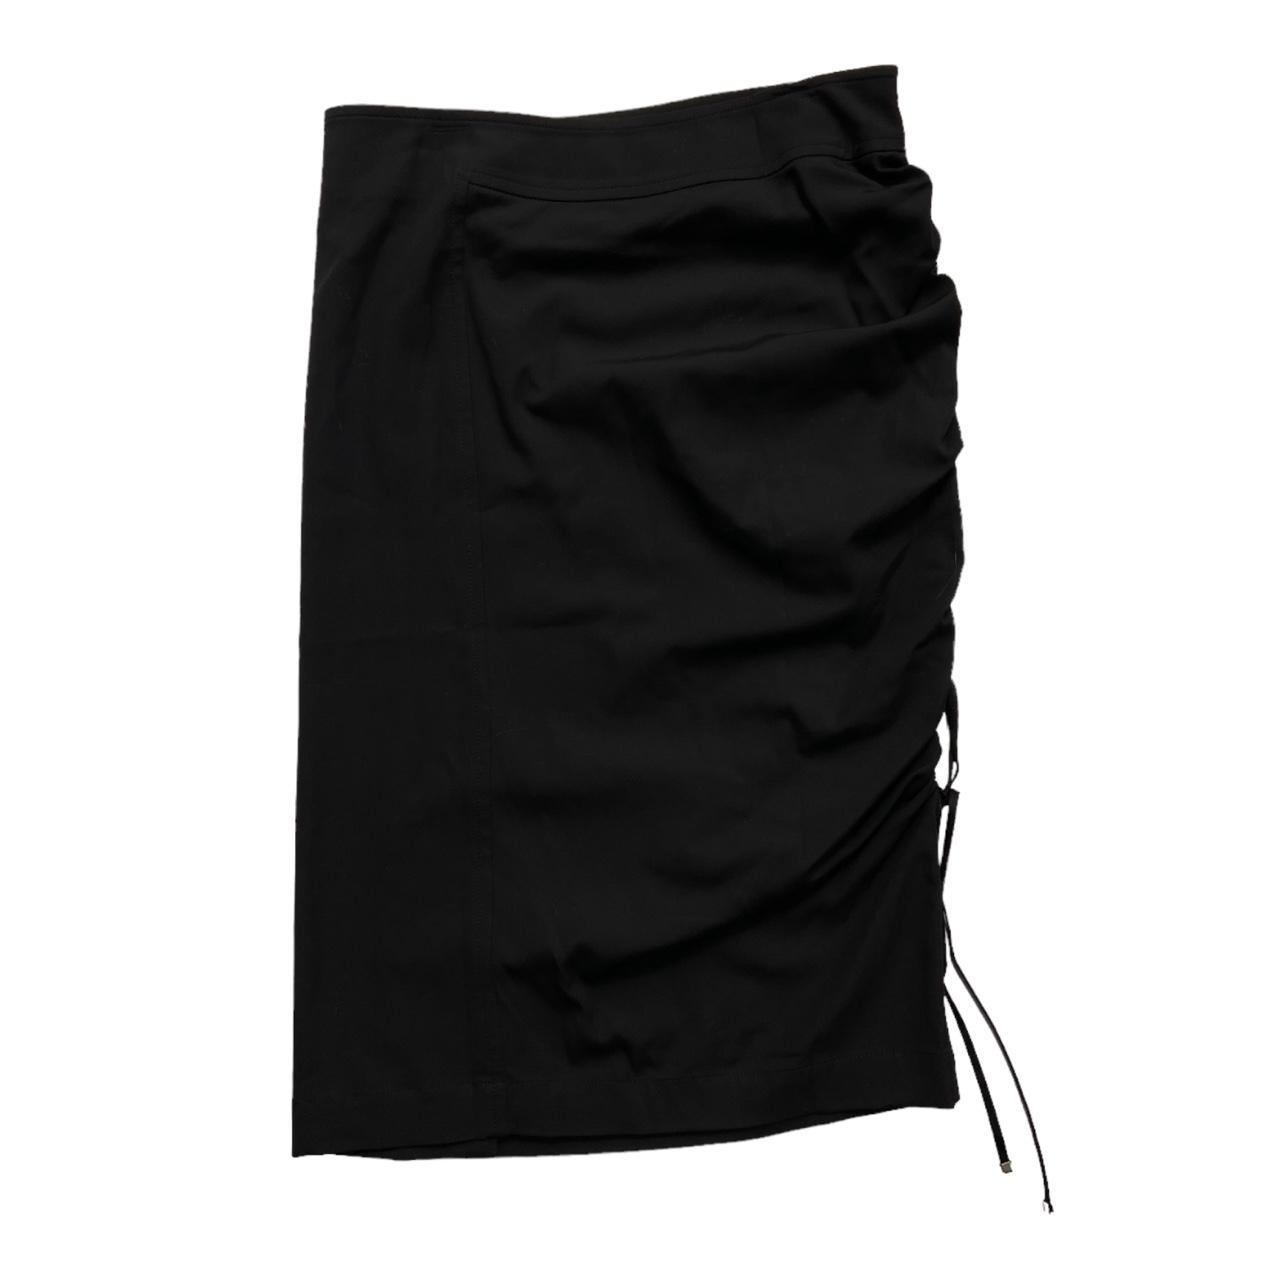 Sportmax Women's Black Skirt